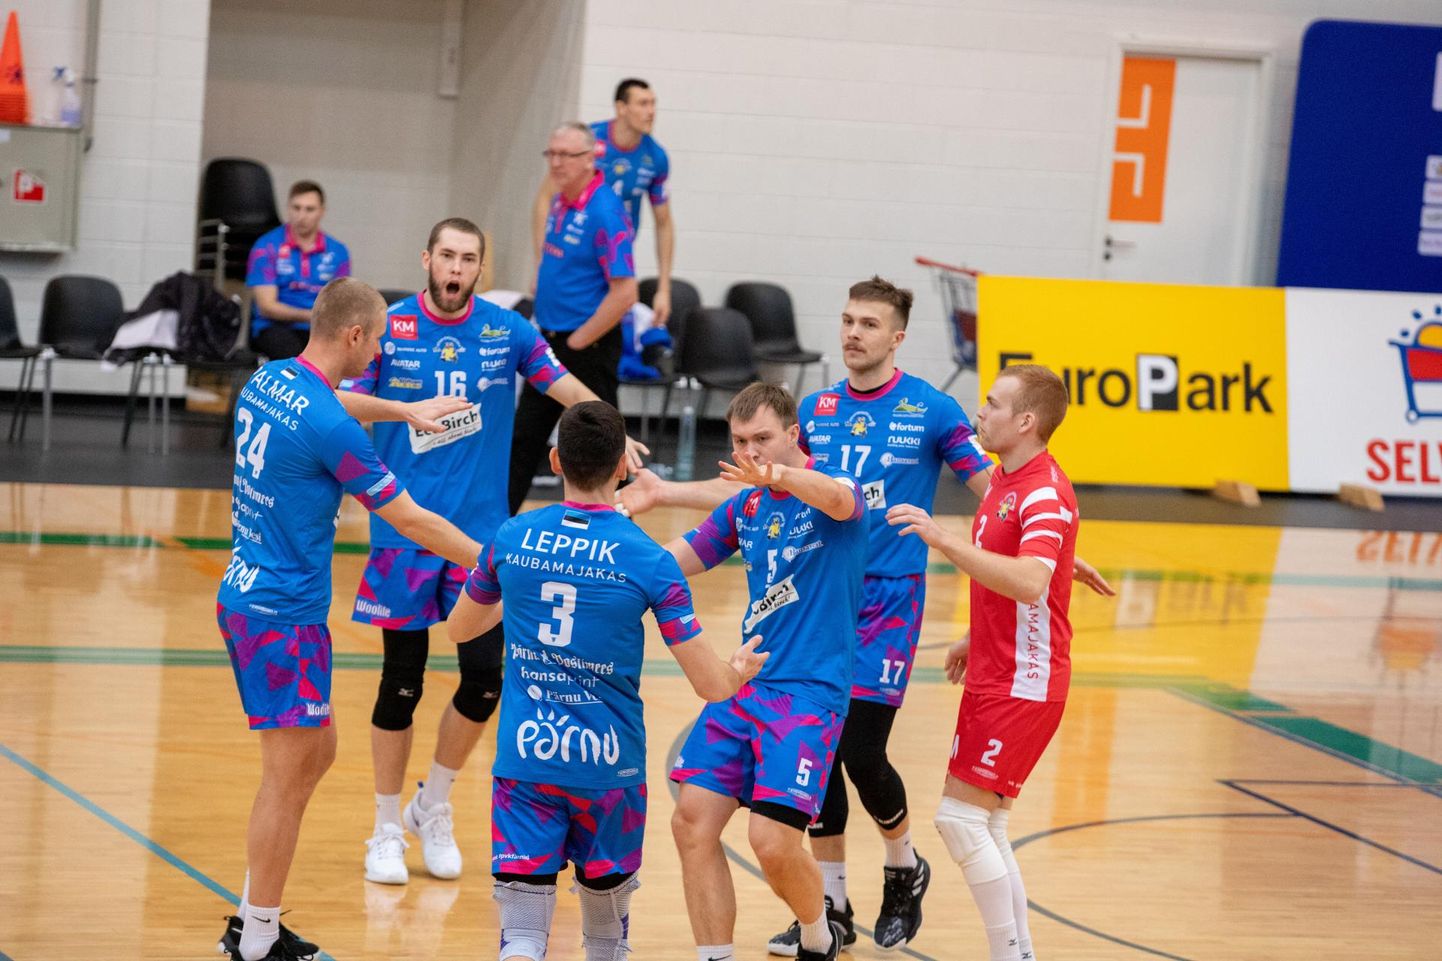 Pärnu võrkpalliklubi hooaeg sai läbi. Eesti meistrivõistlustel jäid pärnakad esimesena medalita ega jõudnud Balti liiga finaalturniirile.